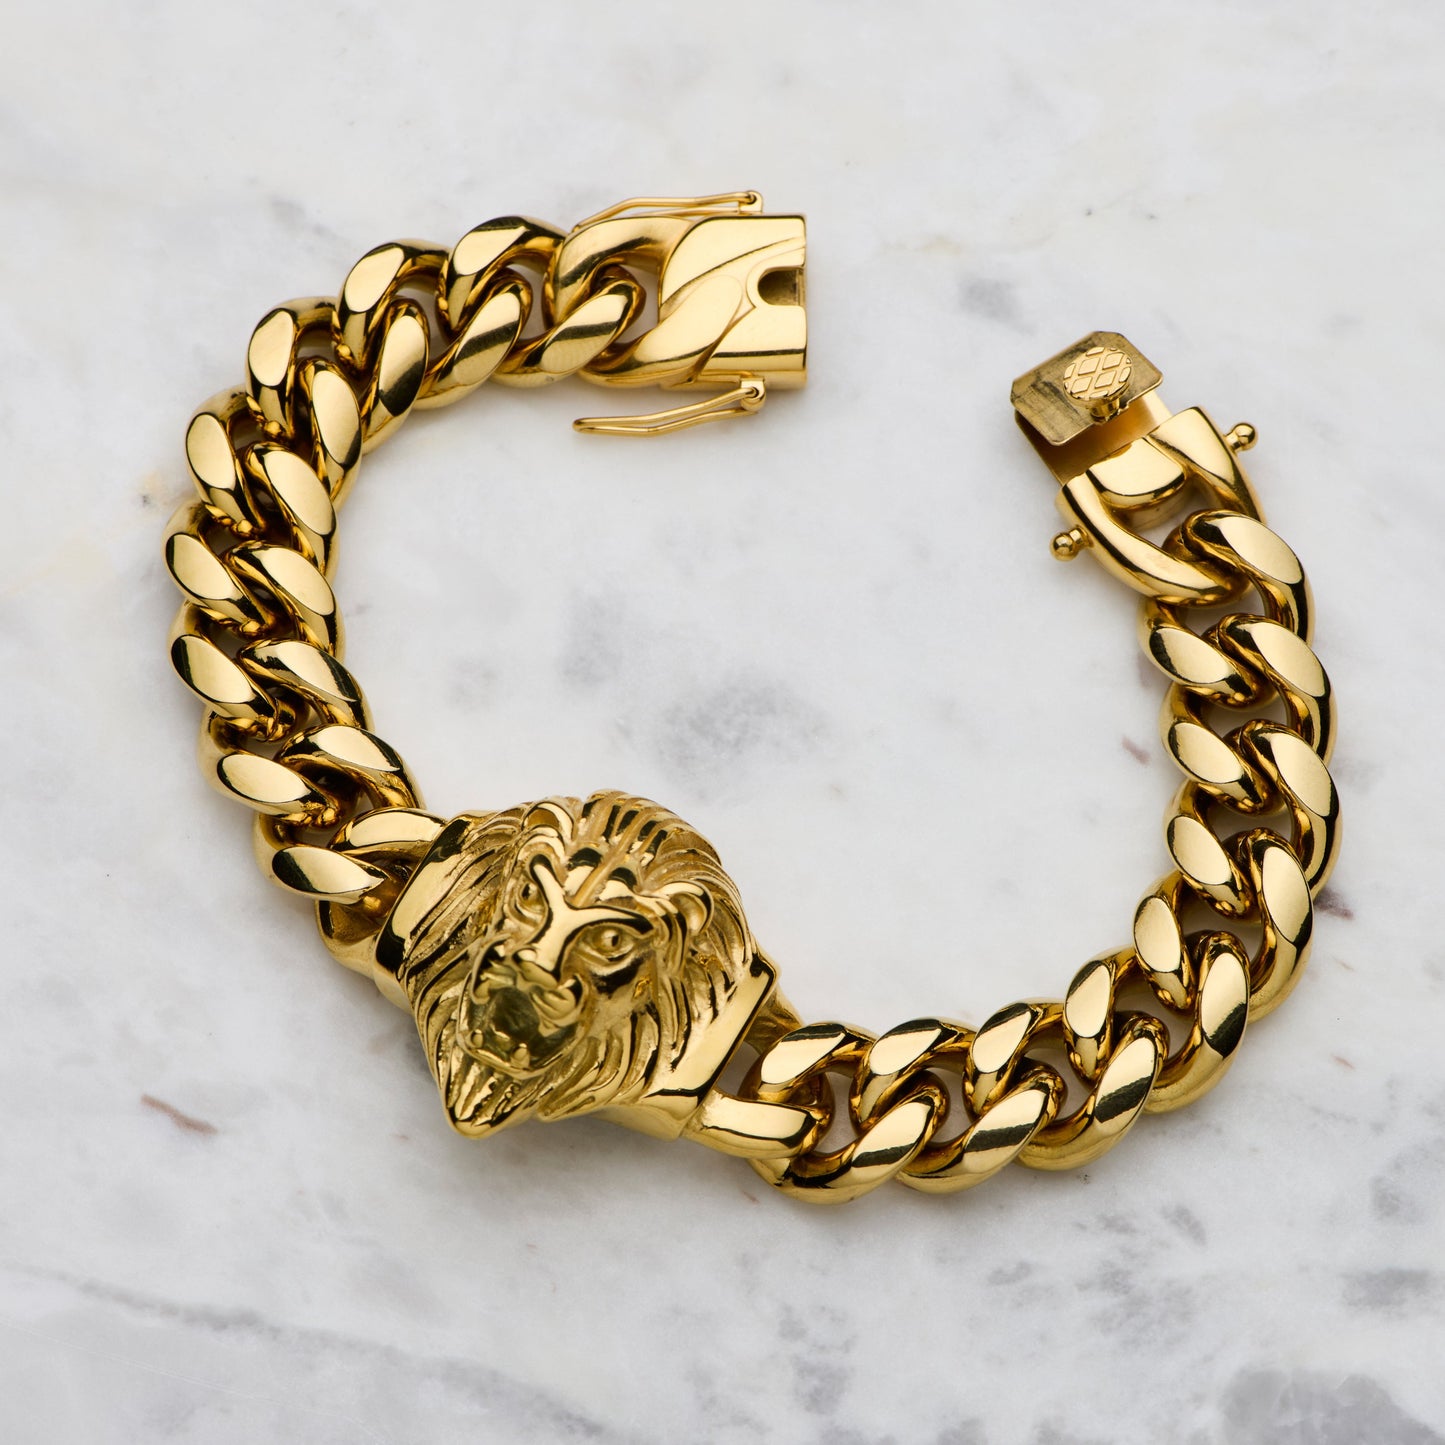 Embossed Lion Bracelet - Gold